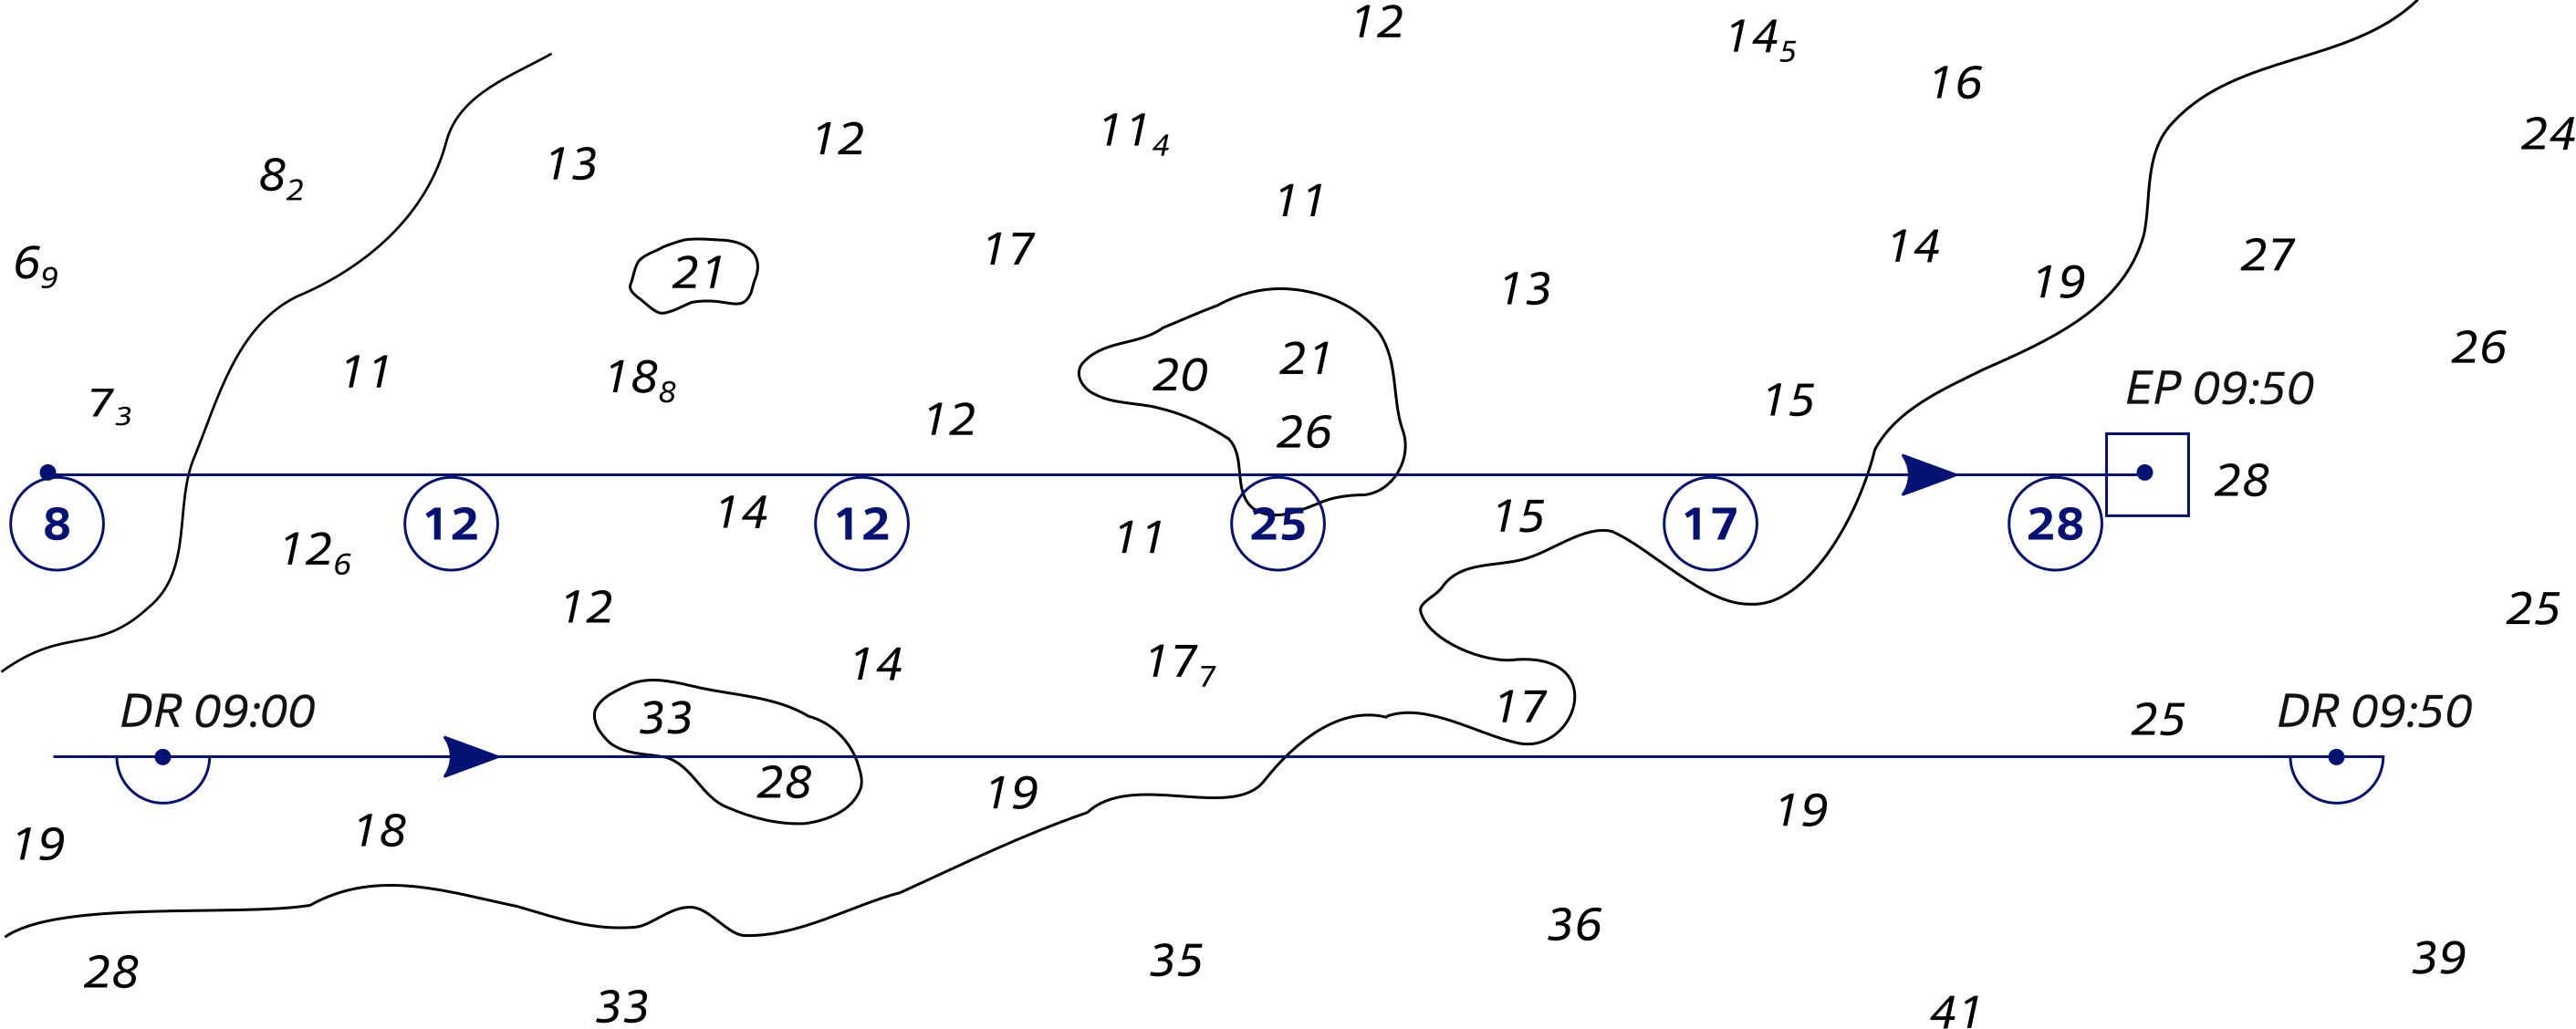 Relative position of adjacent tracks